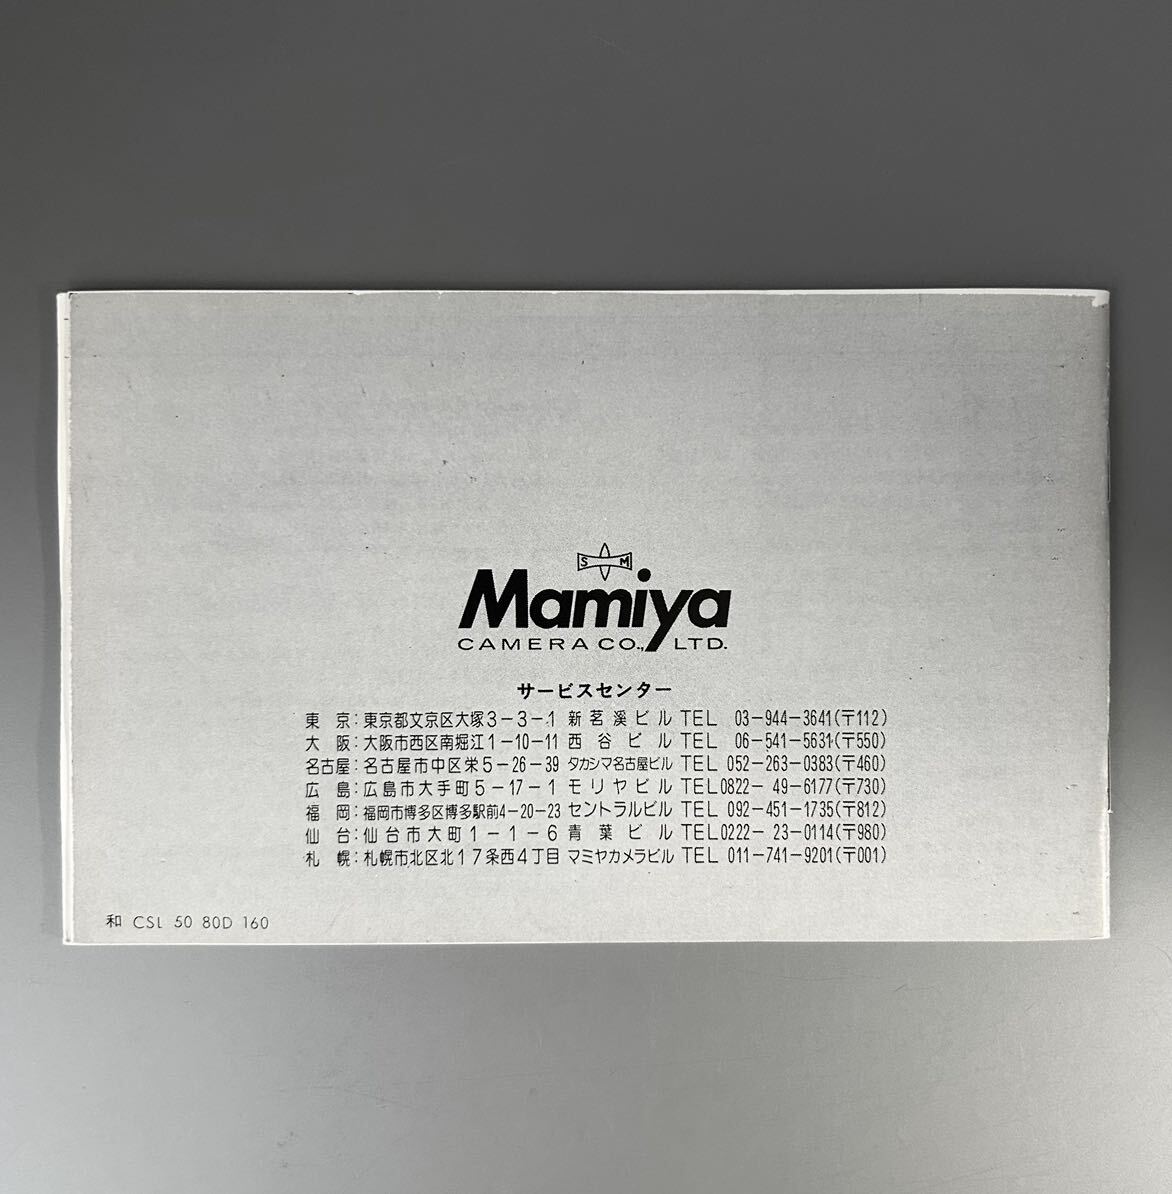  Mamiya Mamiya NC1000s использование инструкция ( стандартный версия ** одиночный цвет ..* все 35 страница ) как новый товар * бесплатная доставка *